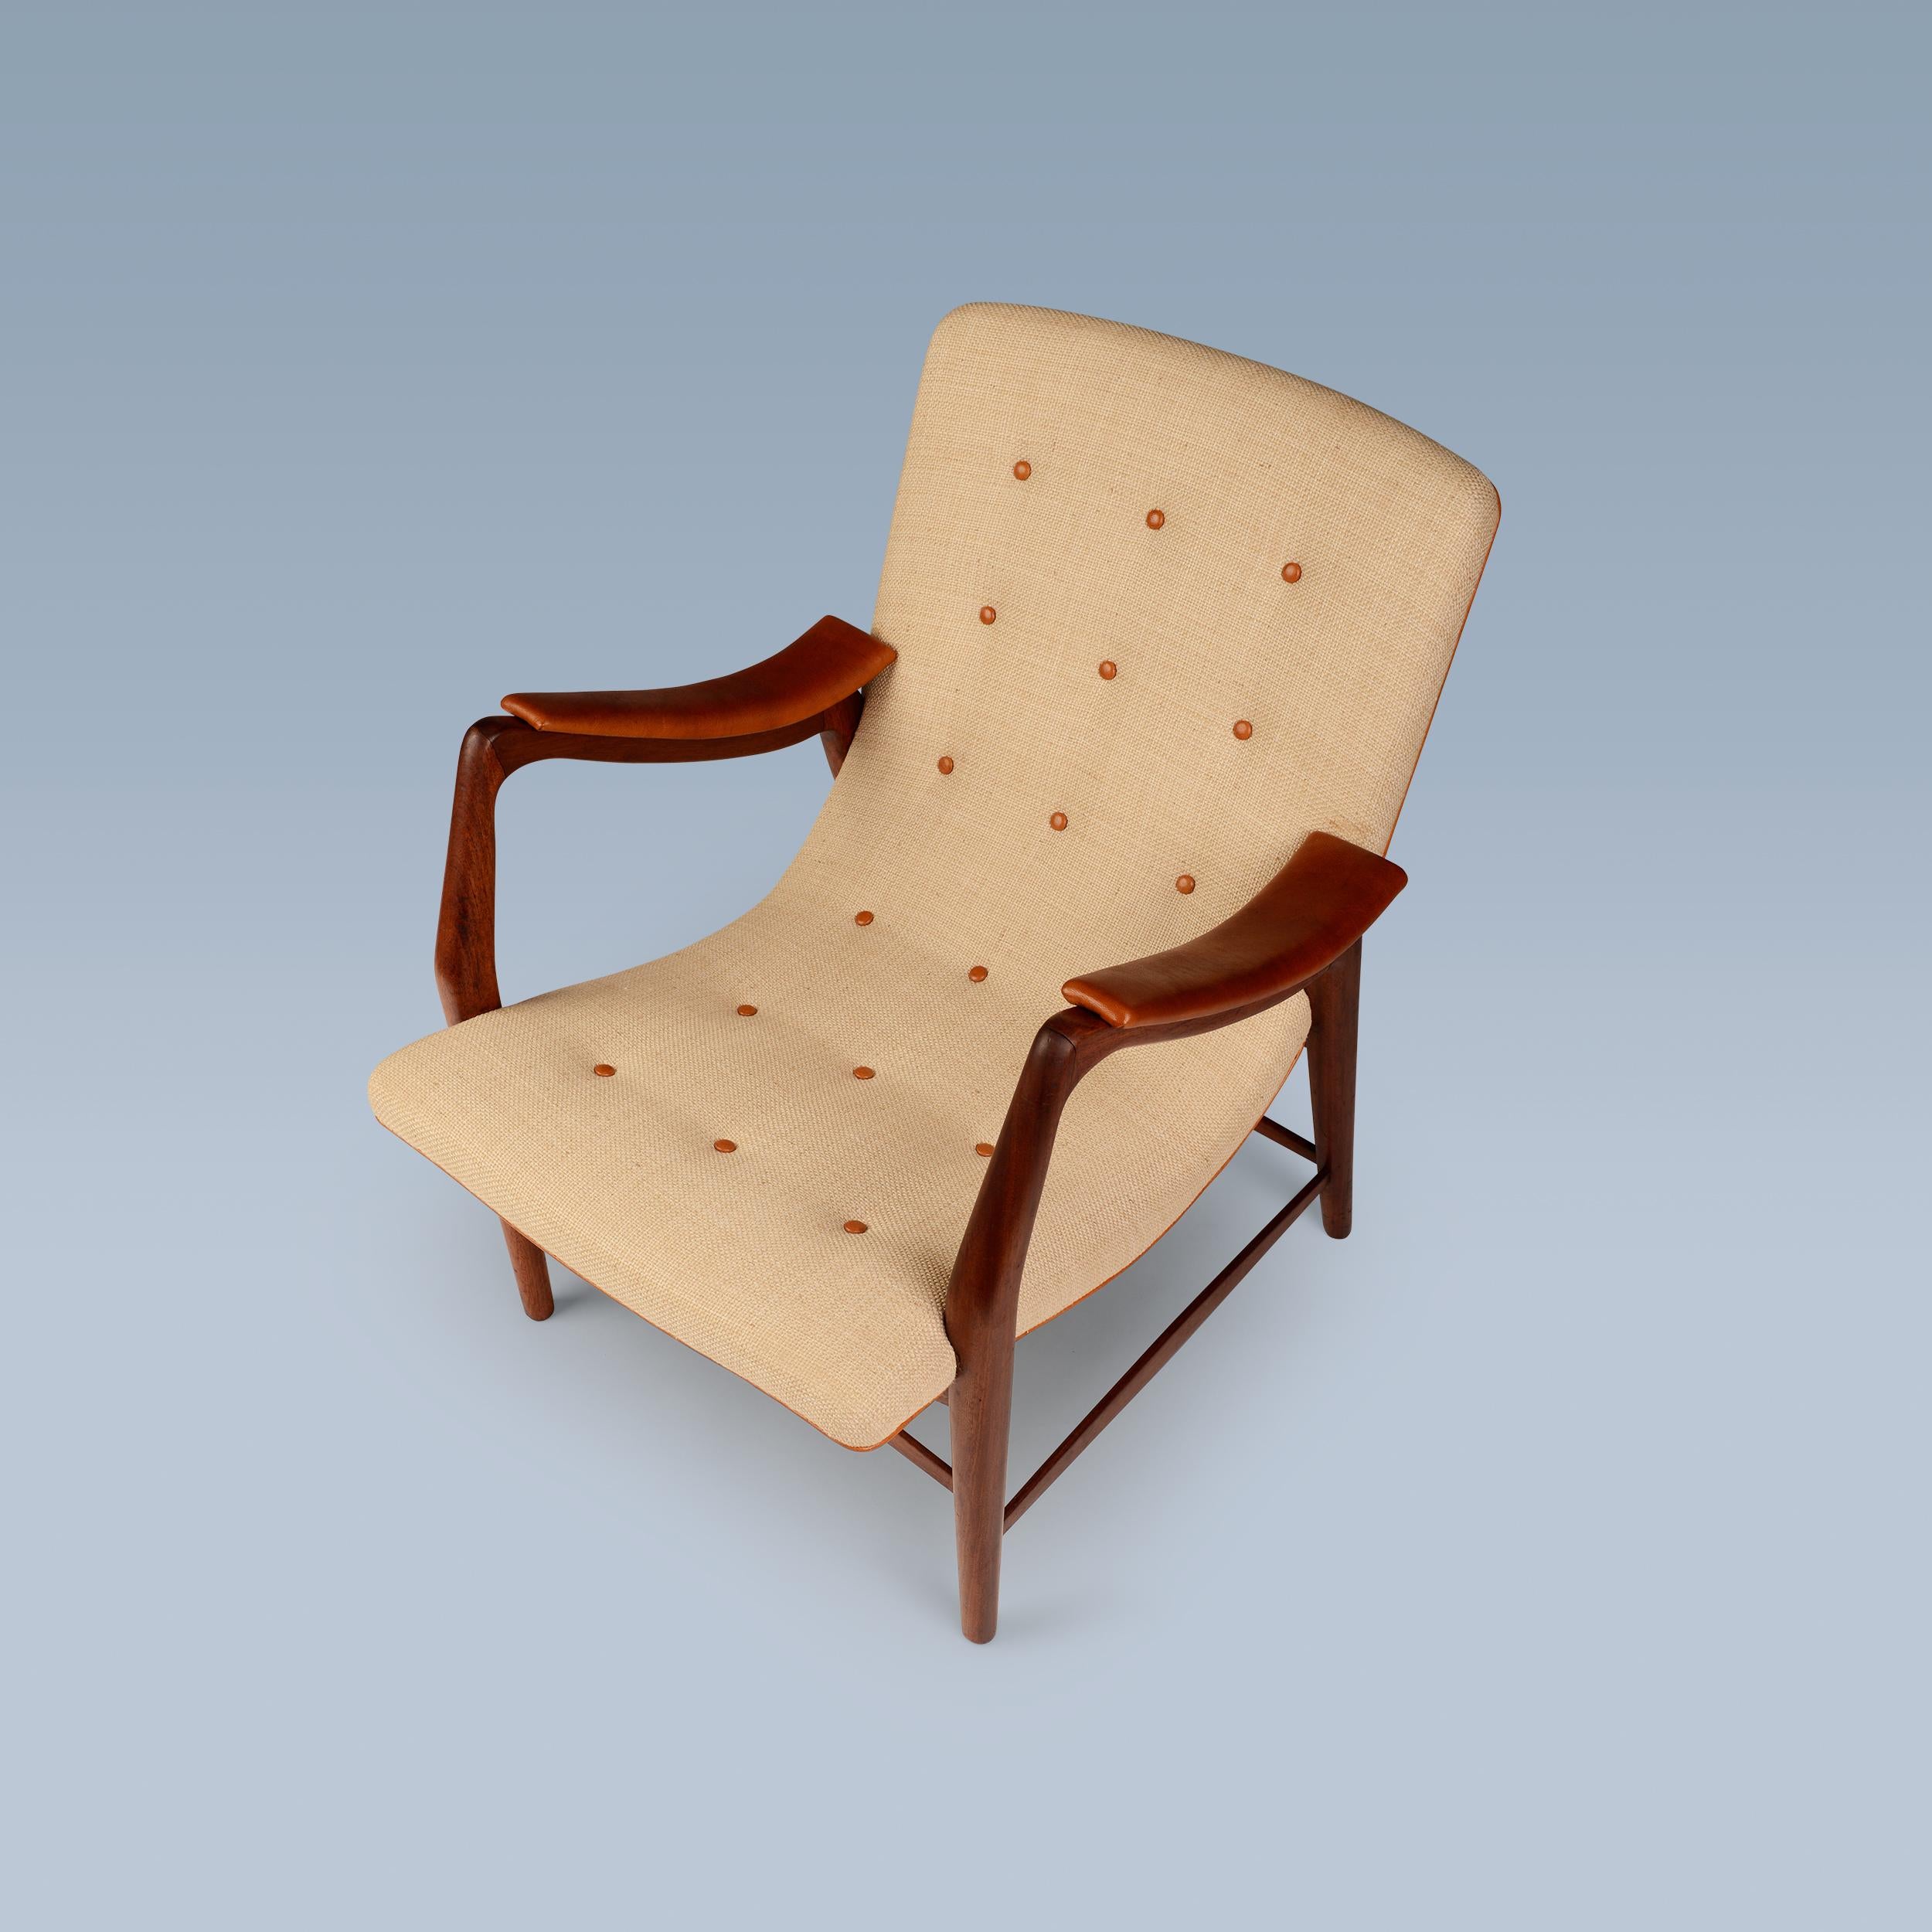 Dieser seltene Sessel aus Teakholz hat eine geschwungene Sitzfläche und die Rückenlehne ist mit hellem Stoff gepolstert. Die Armlehnen, die Keder und die Knöpfe auf der Rückseite sind mit Nigerleder ausgestattet.

Der Stuhl wurde Anfang 1947 von